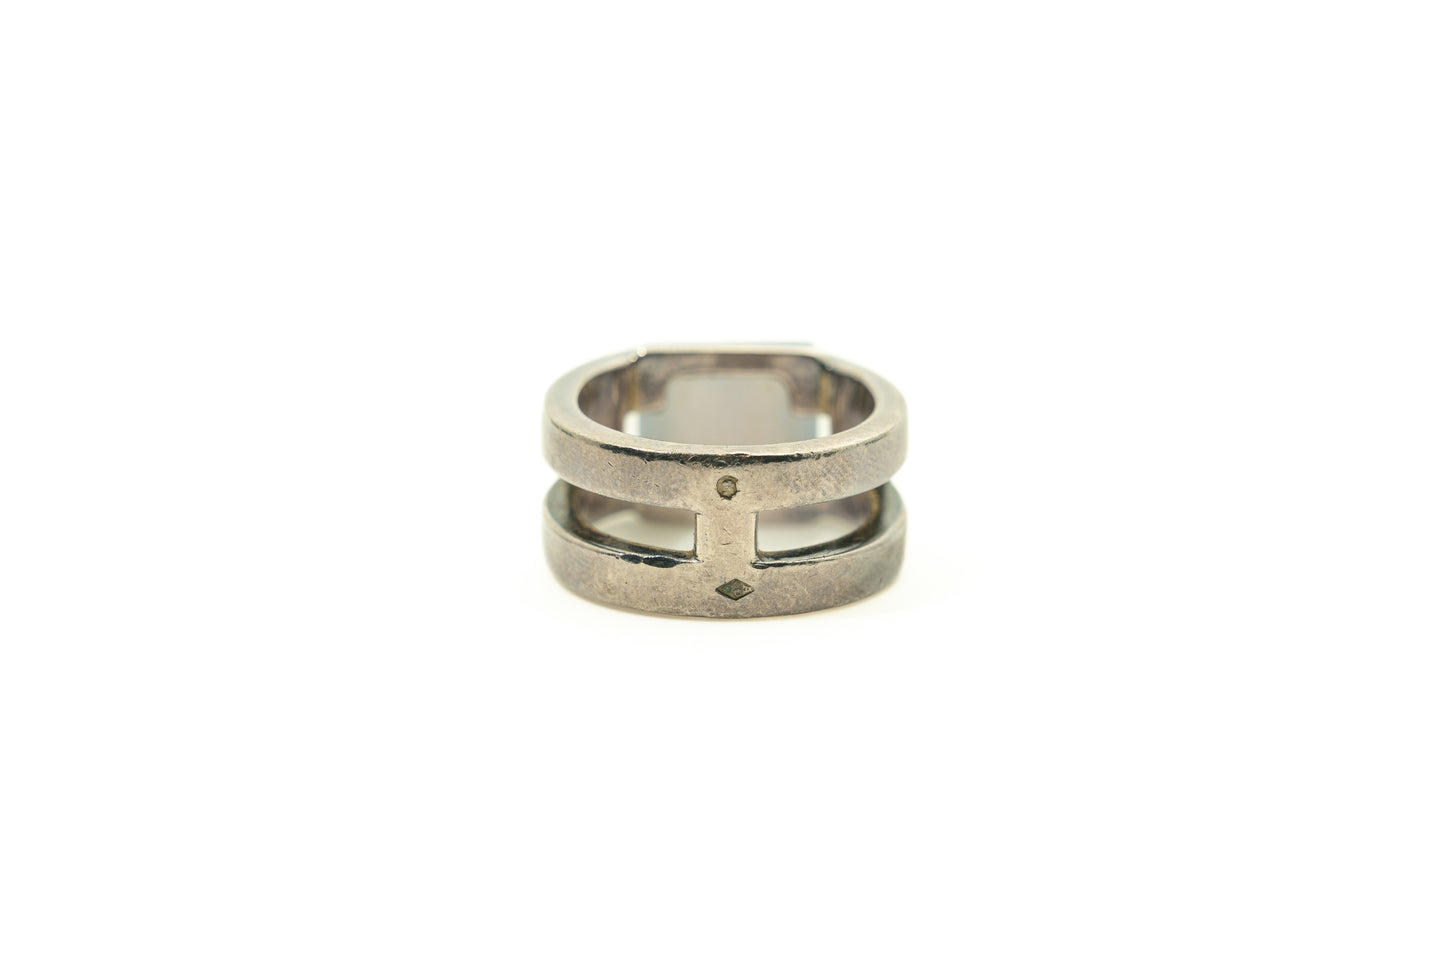 Hermes Ring